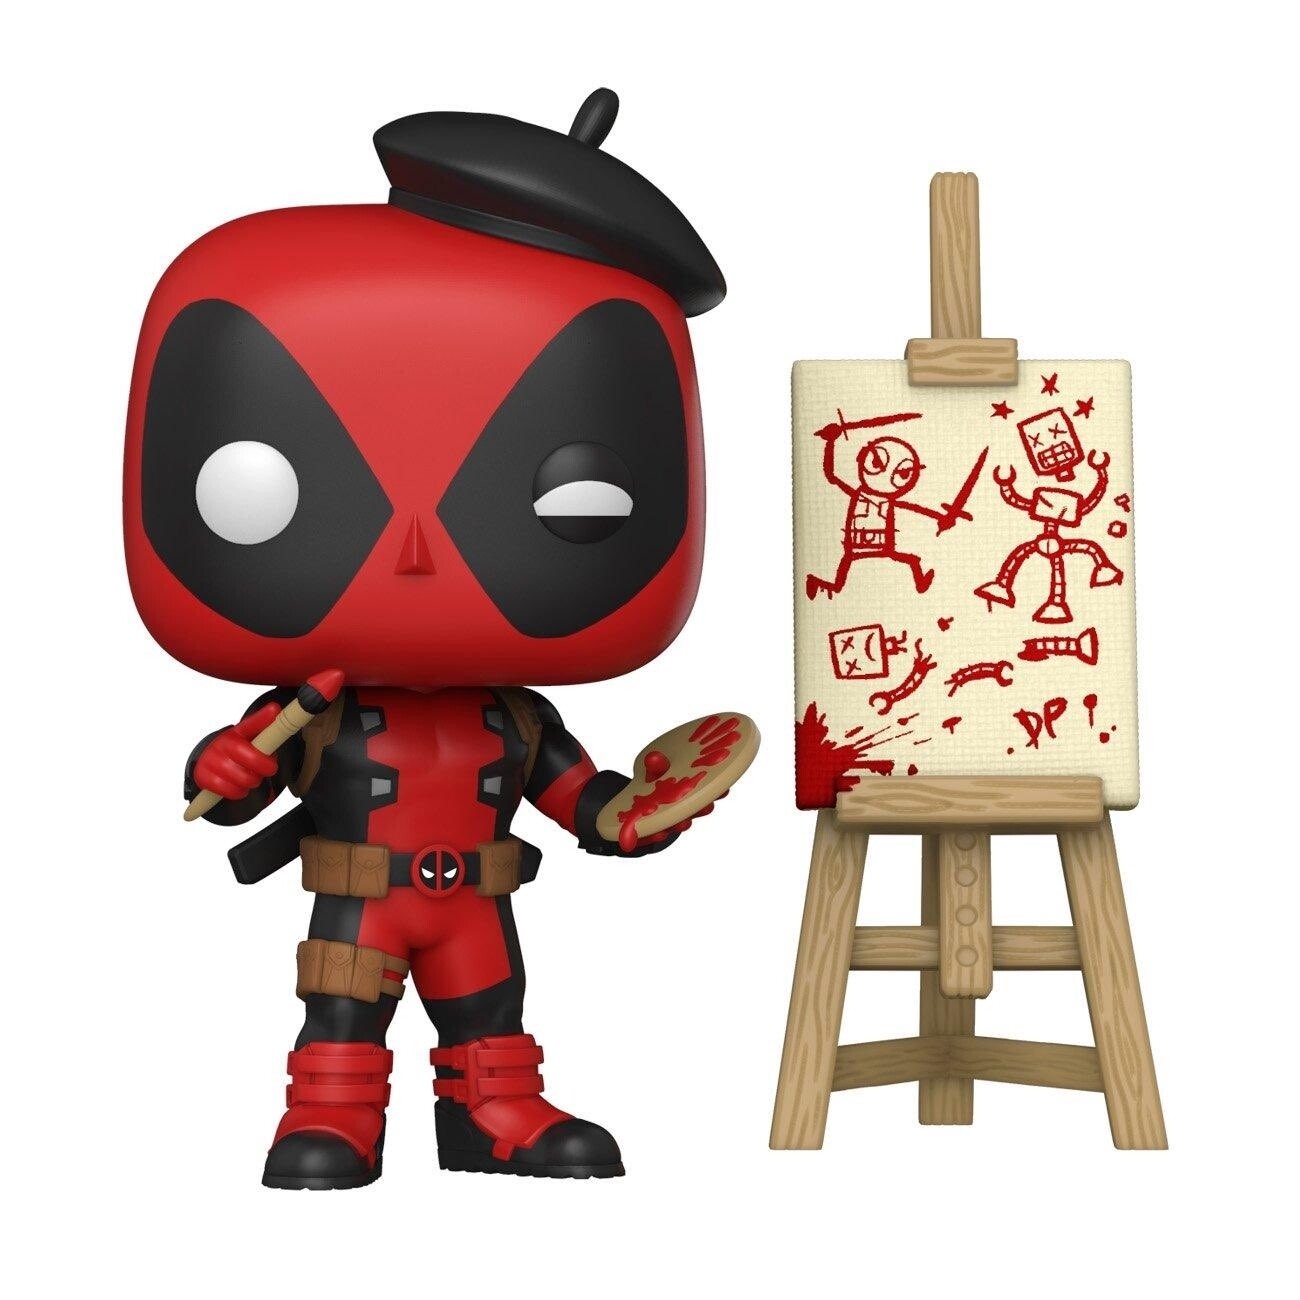 Funko Pop Marvel: Deadpool Artist Exclusivo de GameStop